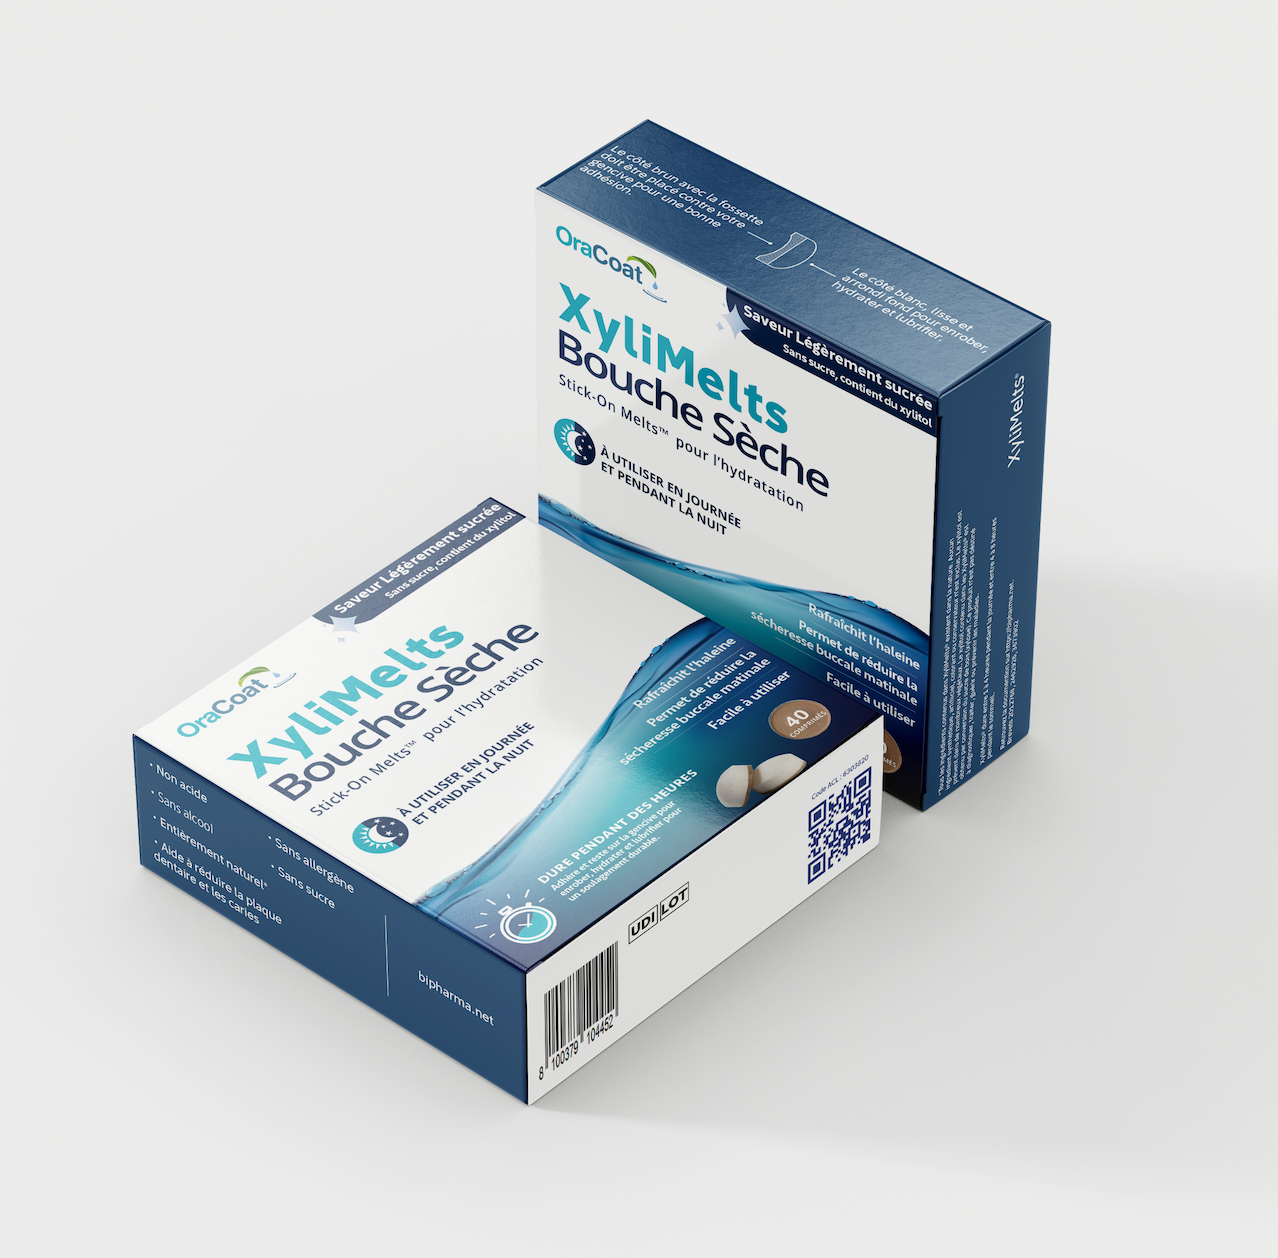 Xylimelts® – Comprimé adhésif contre la bouche sèche